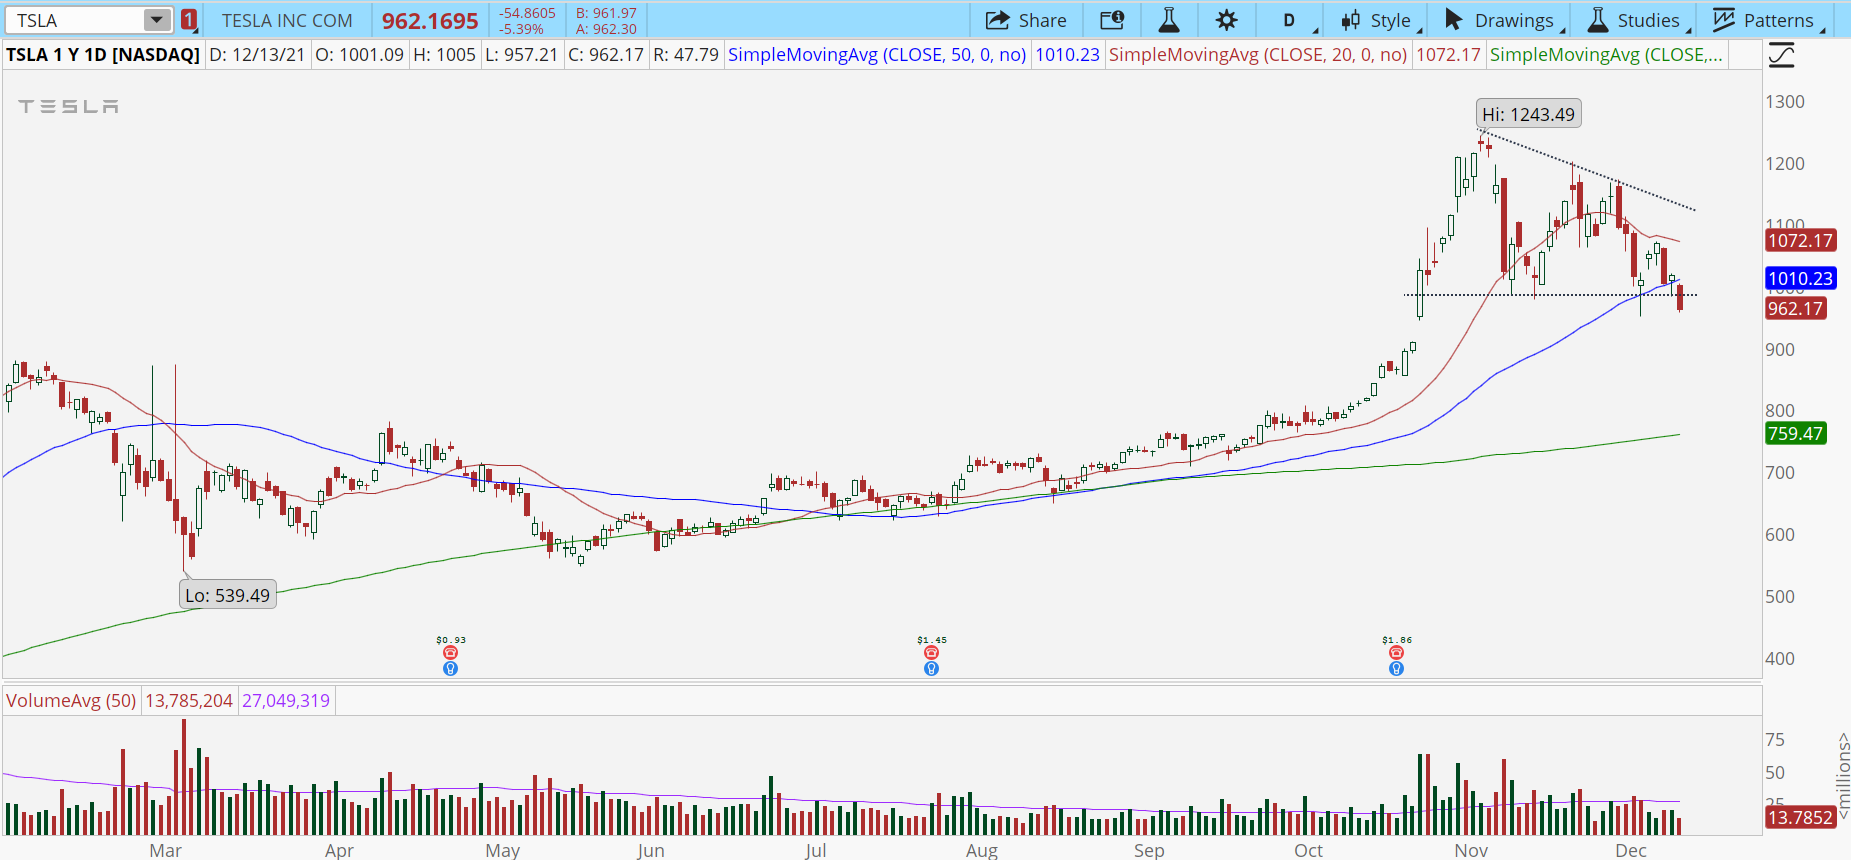 Tesla (TSLA) stock chart with bear breakout pattern.